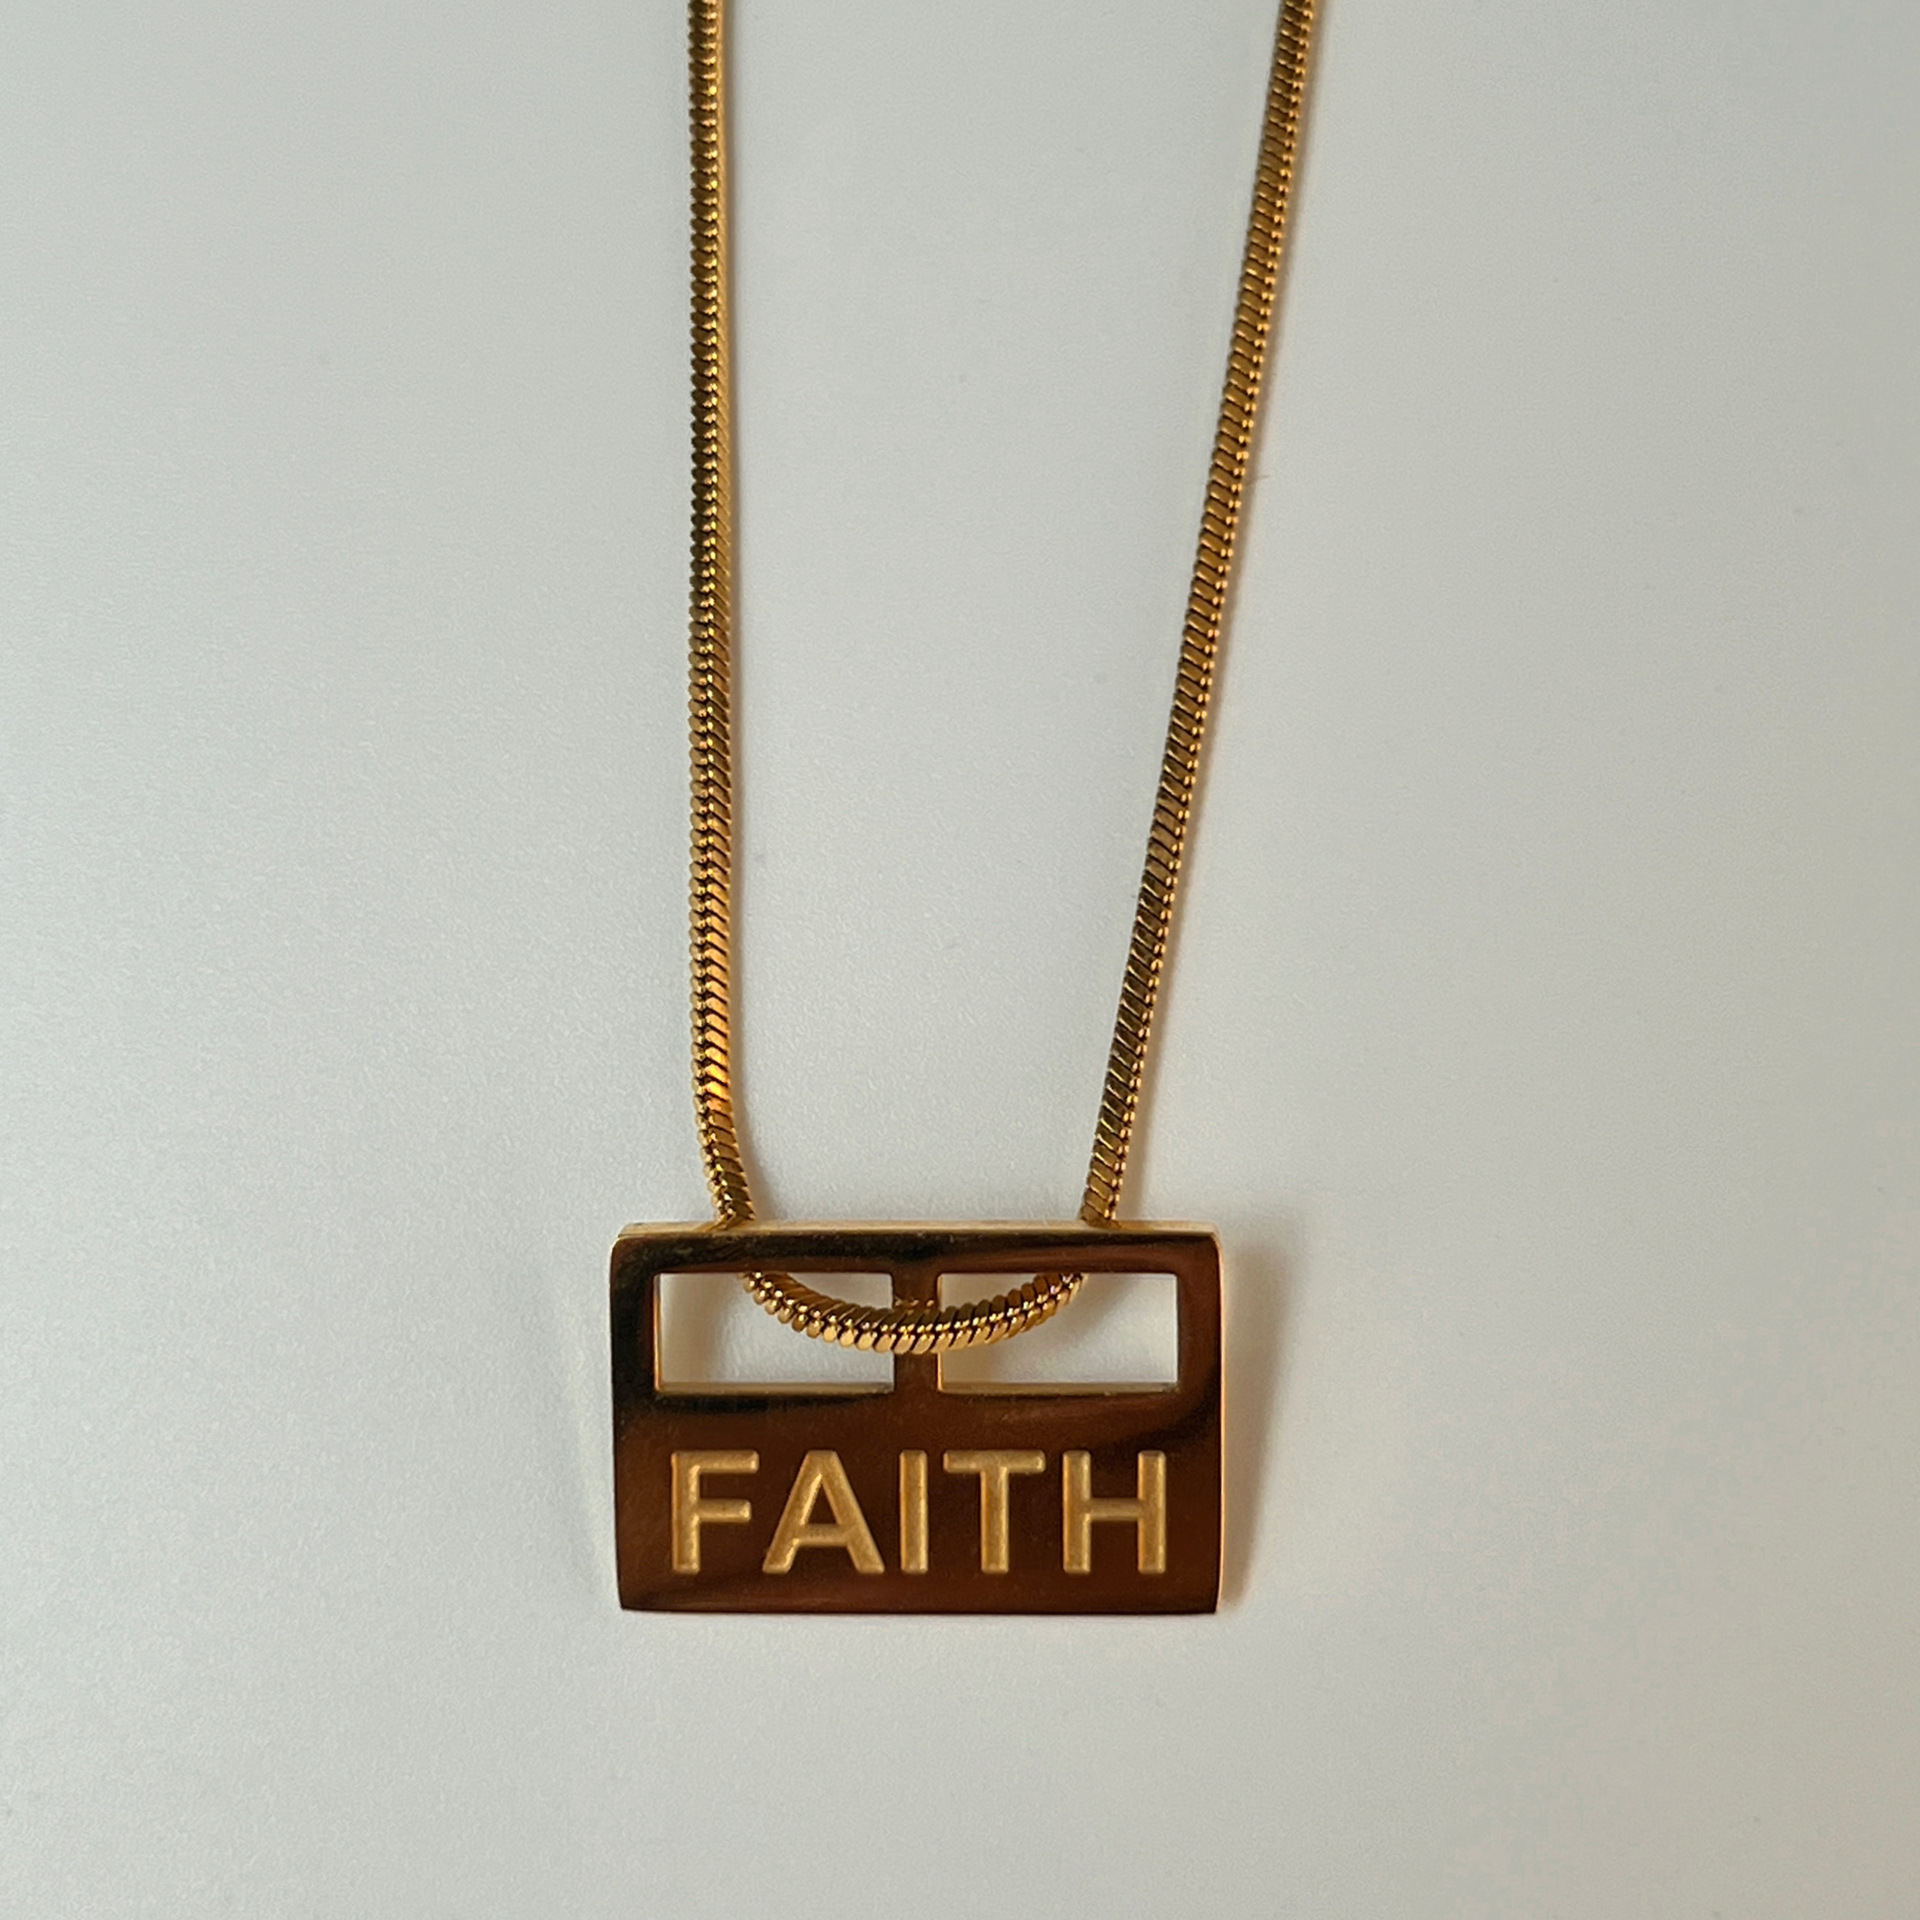 2:FAITH